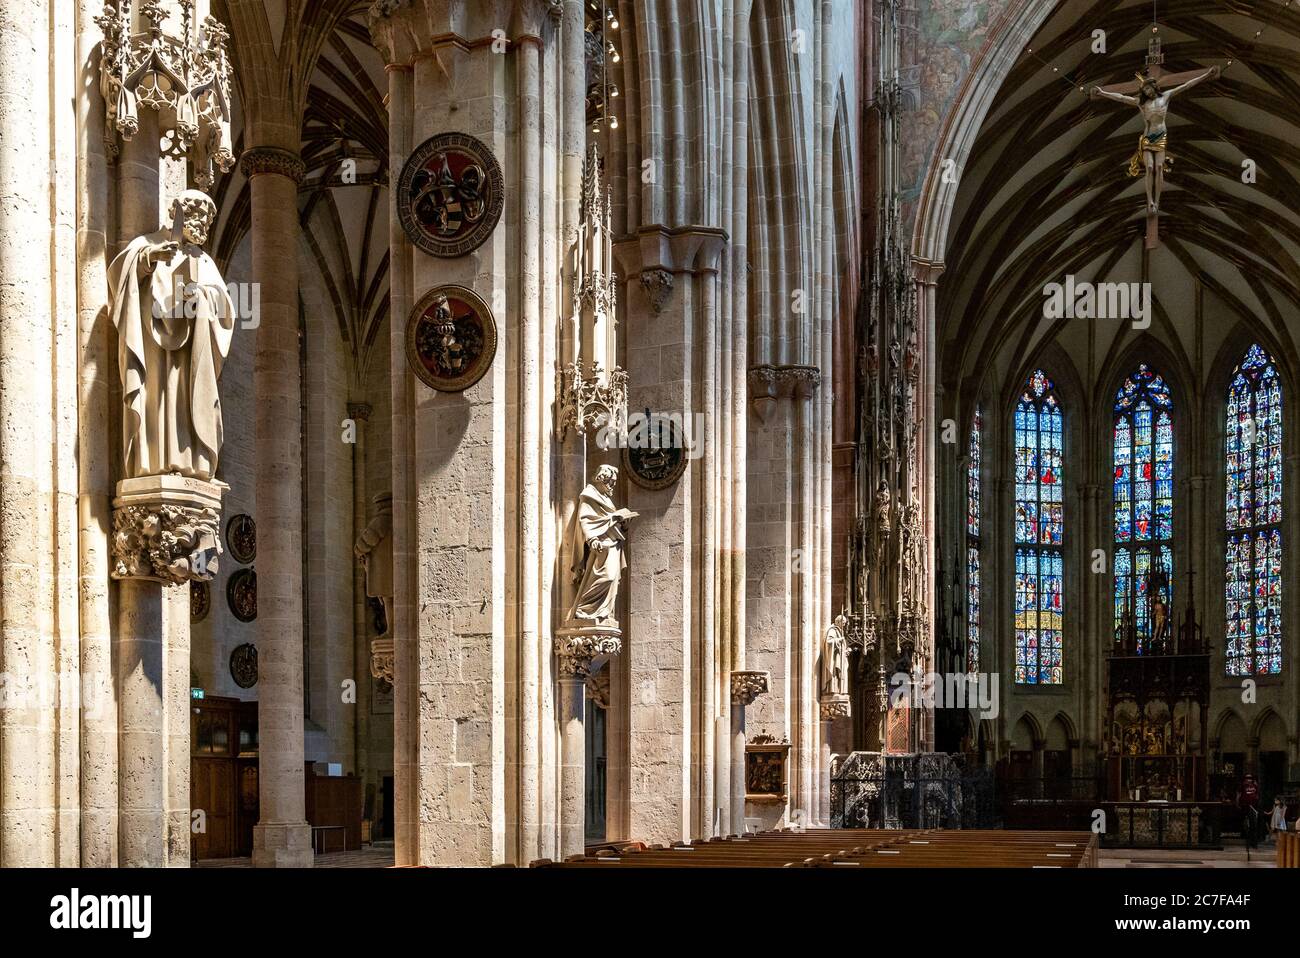 Ulm, BW / Allemagne - 14 juillet 2020 : vitraux dans l'abside et sculptures sur les contreforts de la nef dans le minster d'Ulm Banque D'Images